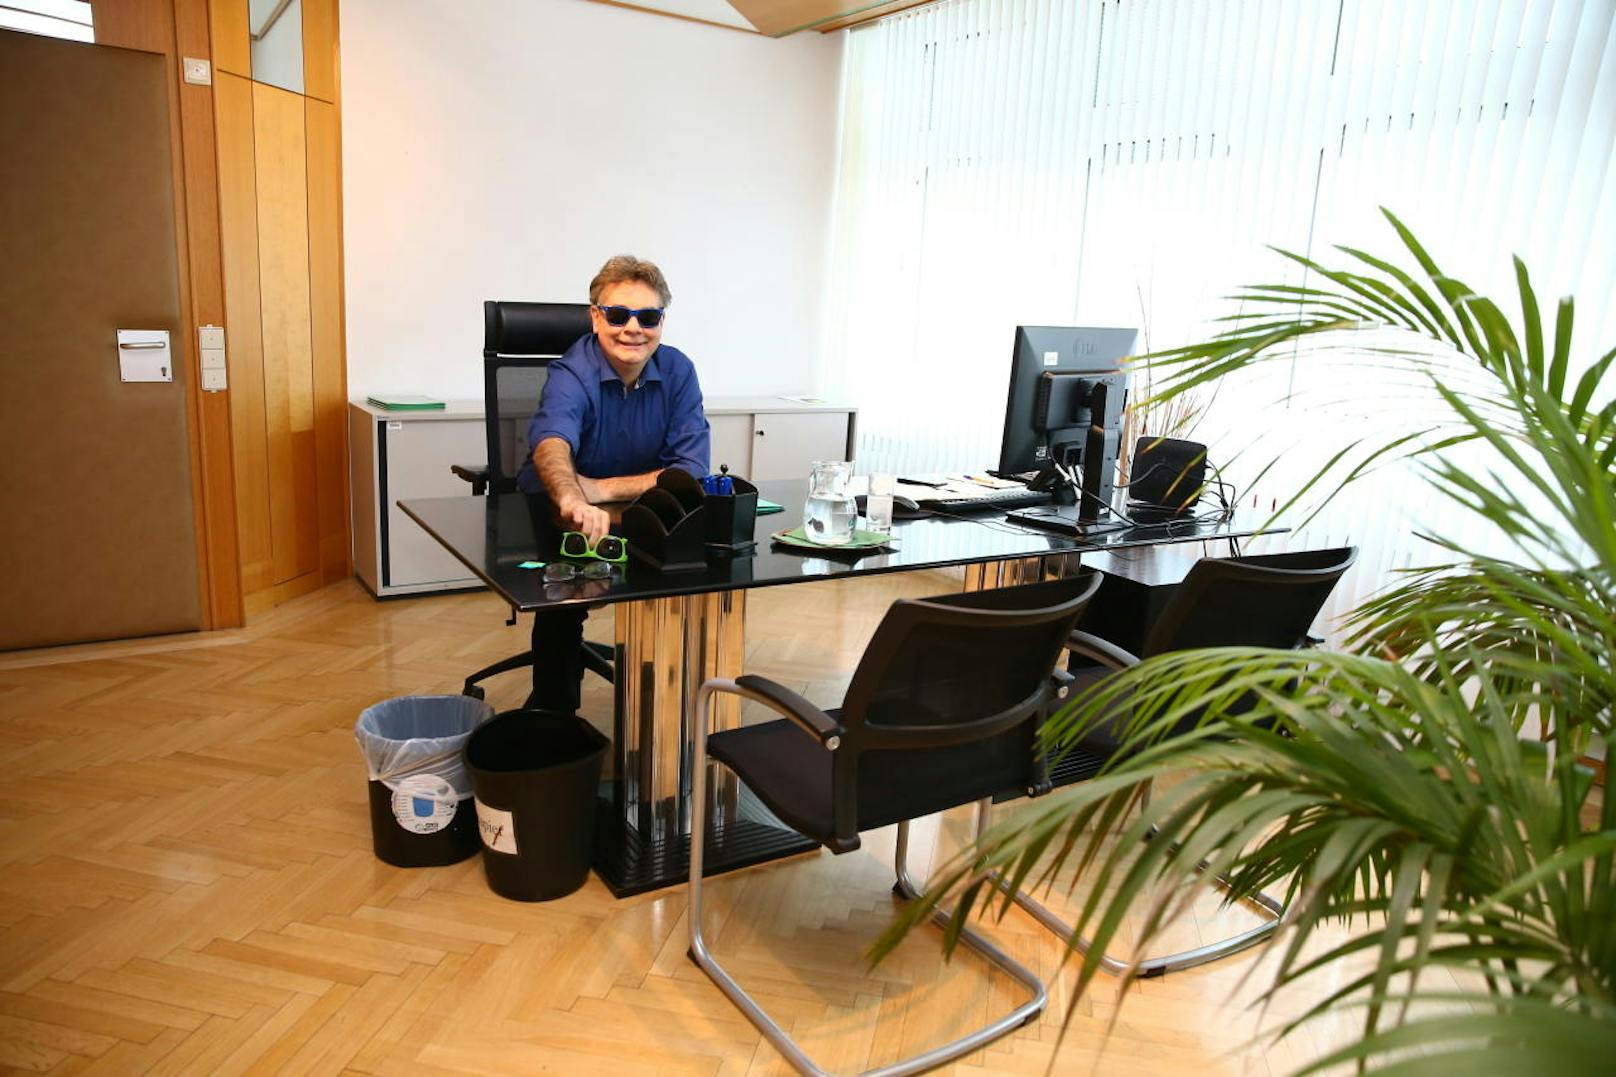 Drei Fotos, die Österreichs Politwechsel symbolisieren. In seinem Büro setzt Kogler beim "Heute"-Besuch plötzlich eine blaue Brille auf...